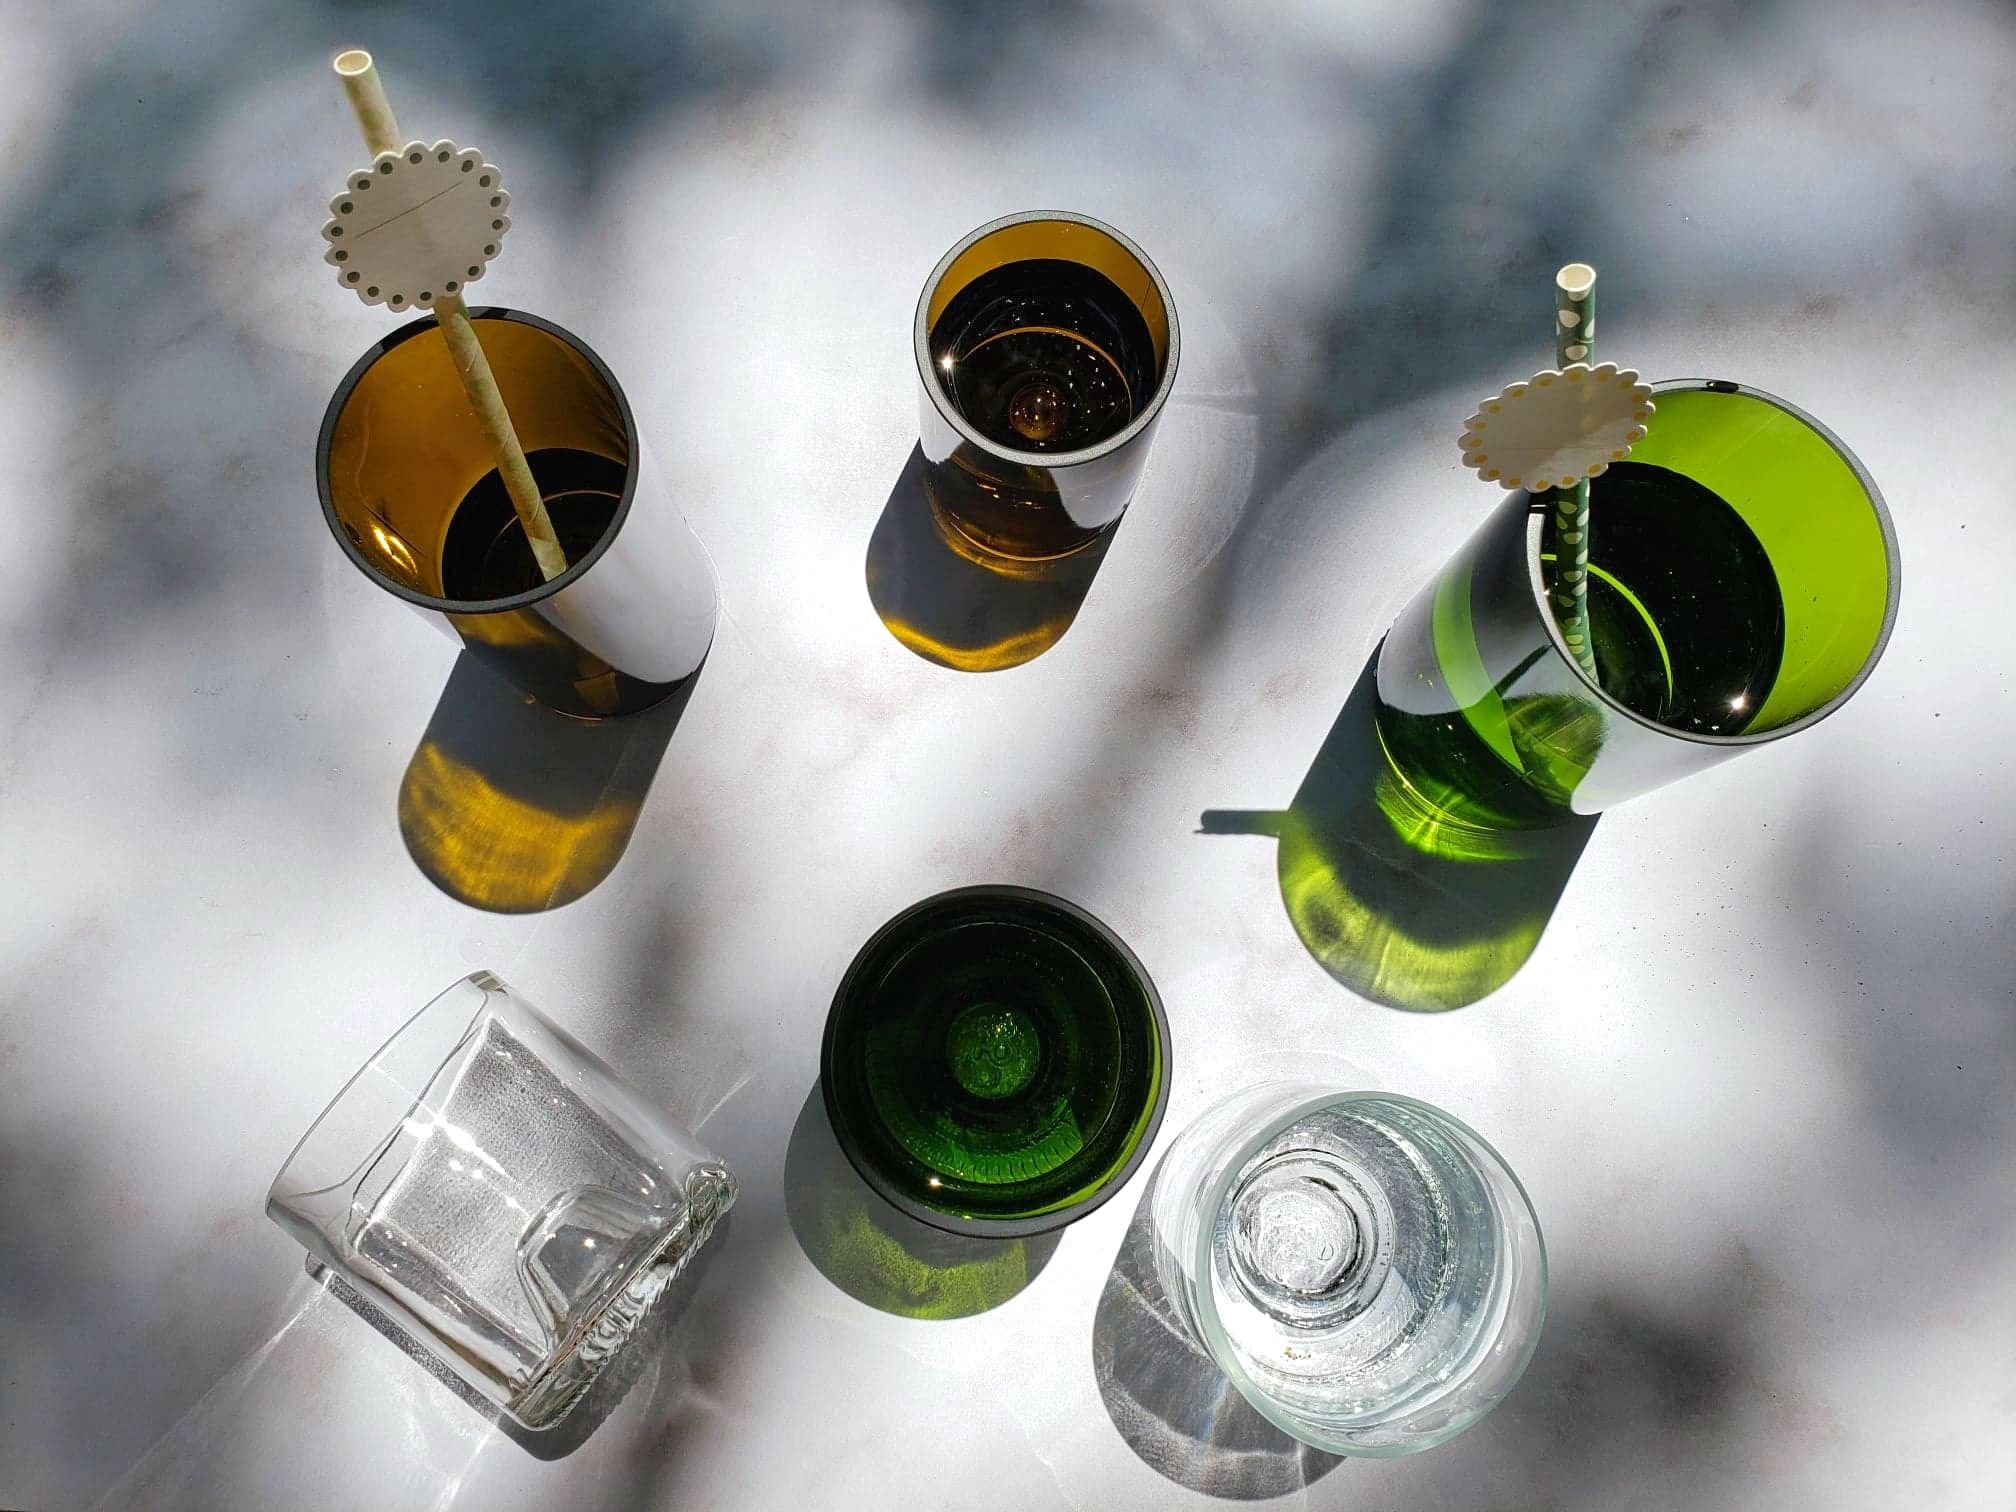  bouteilles de vins recyclées plates et culotées